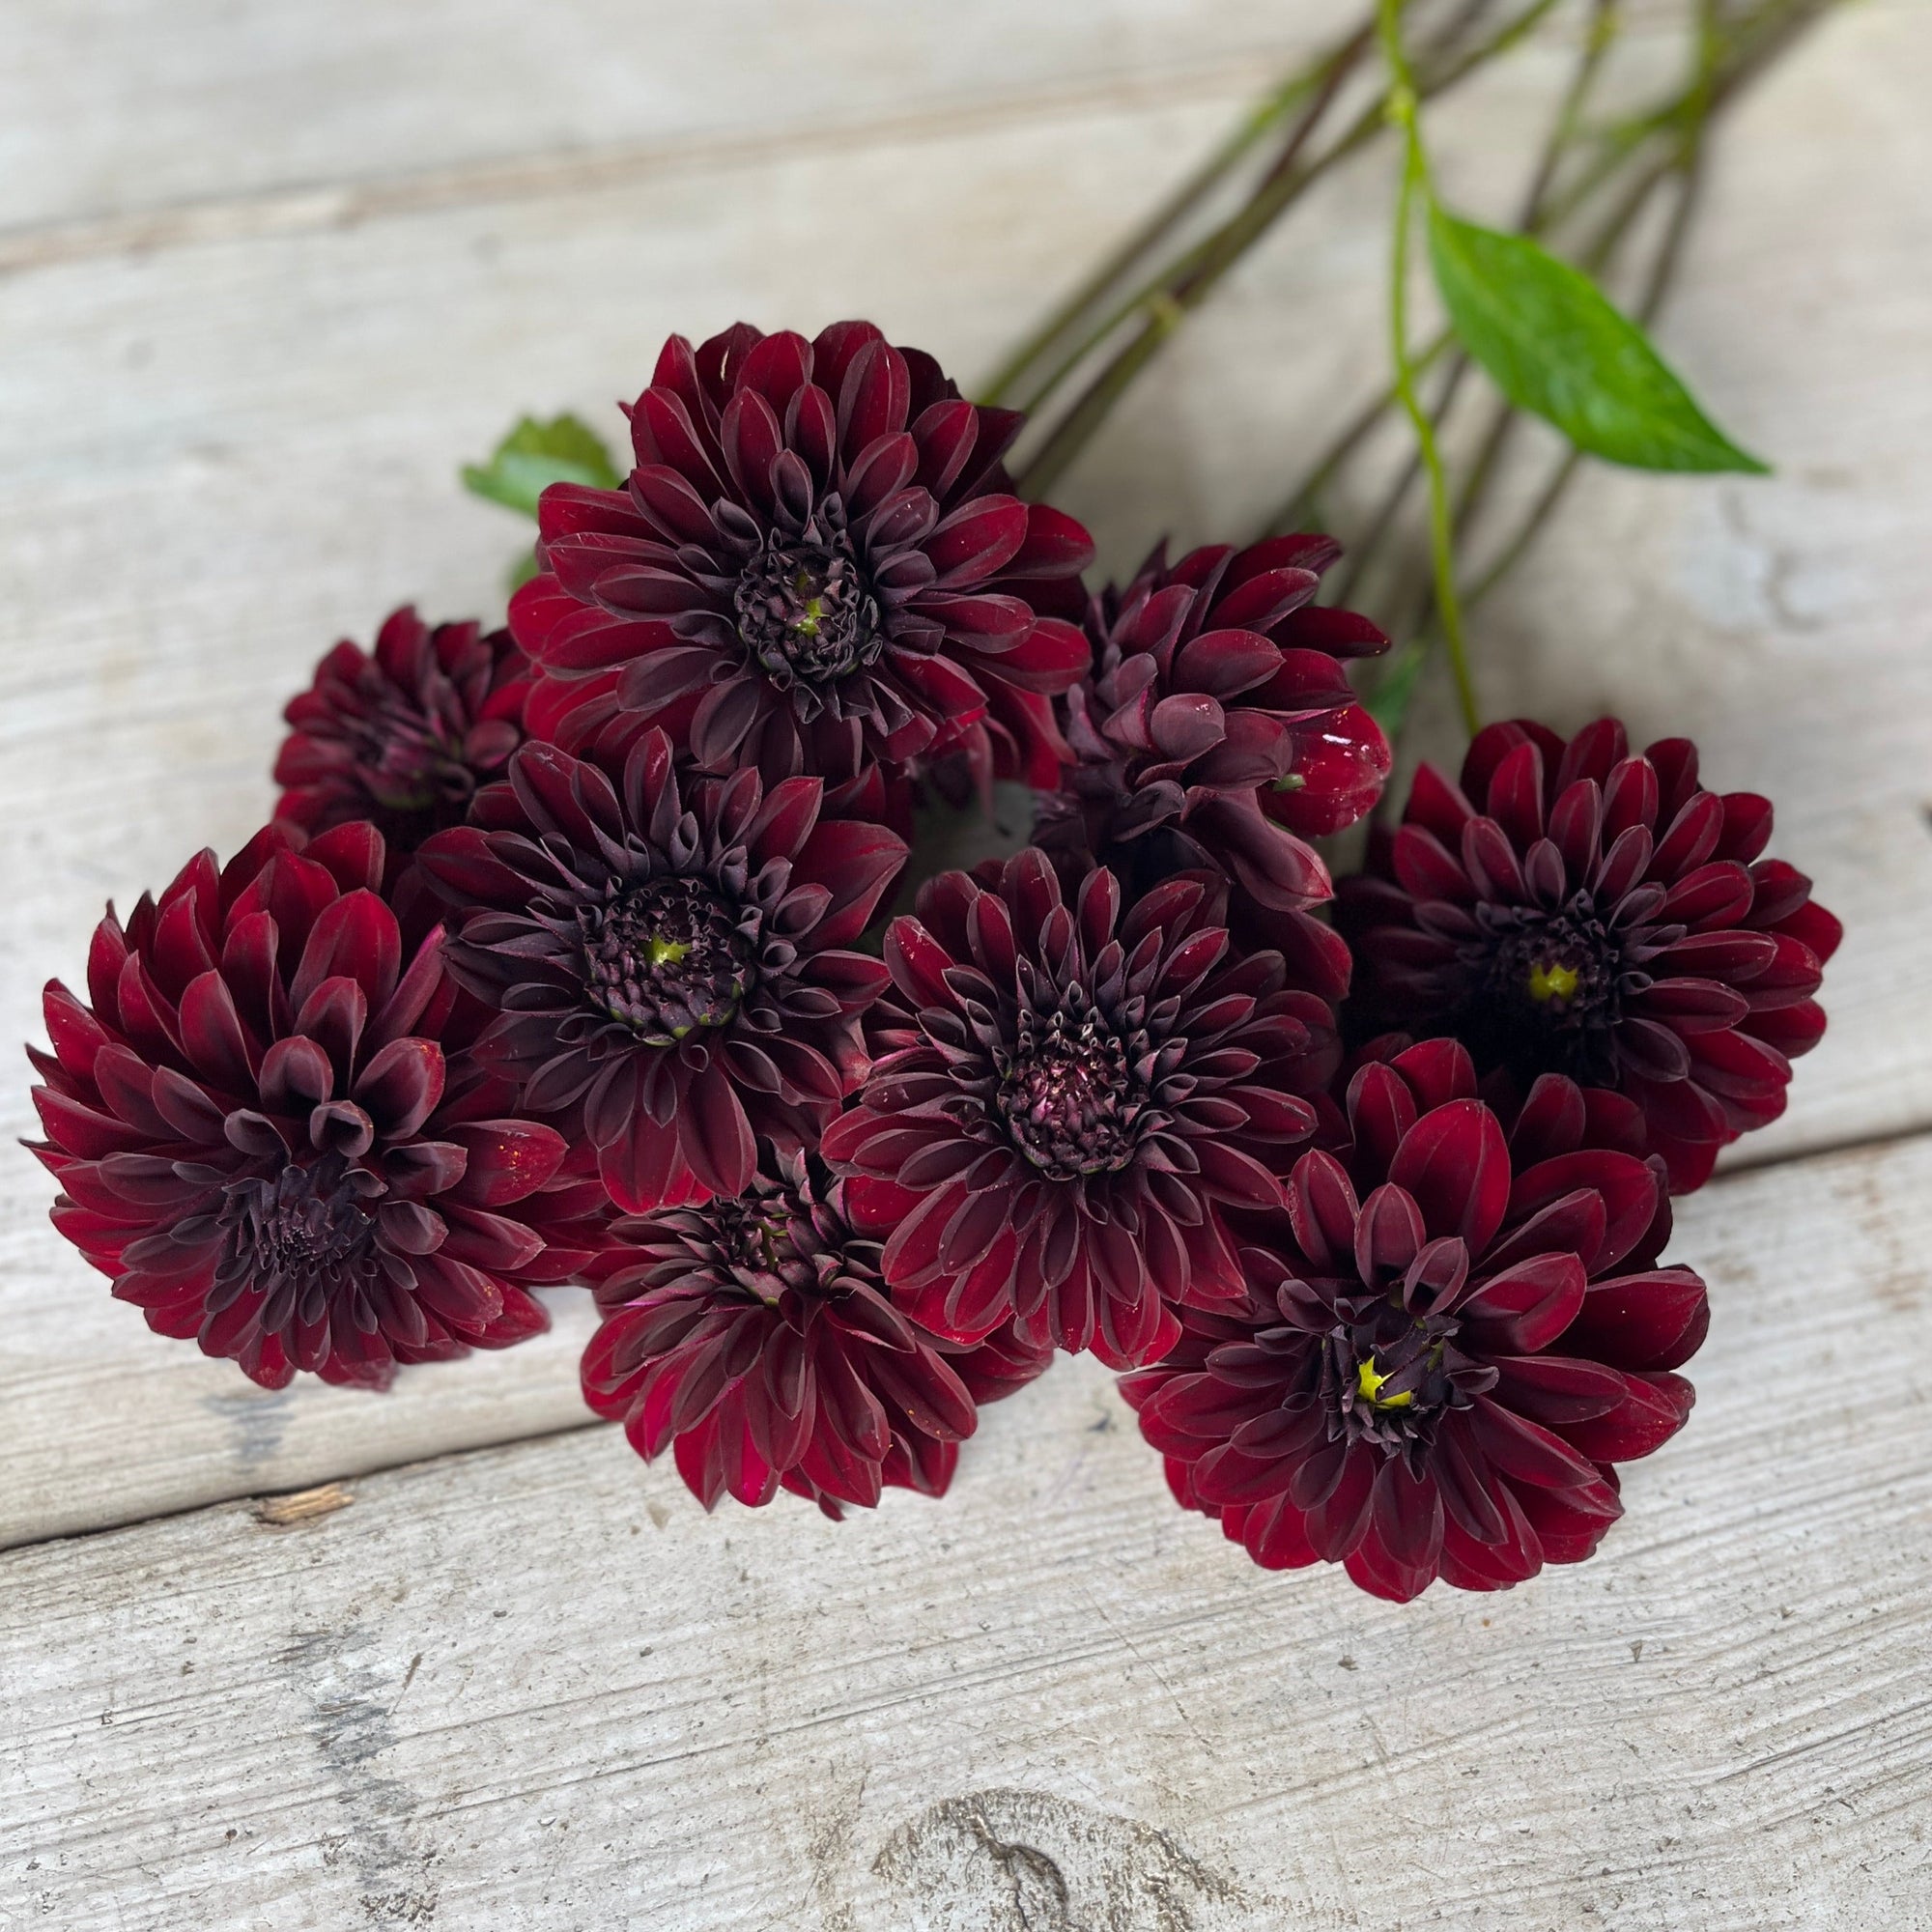 Luxurious dark maroon flowers.